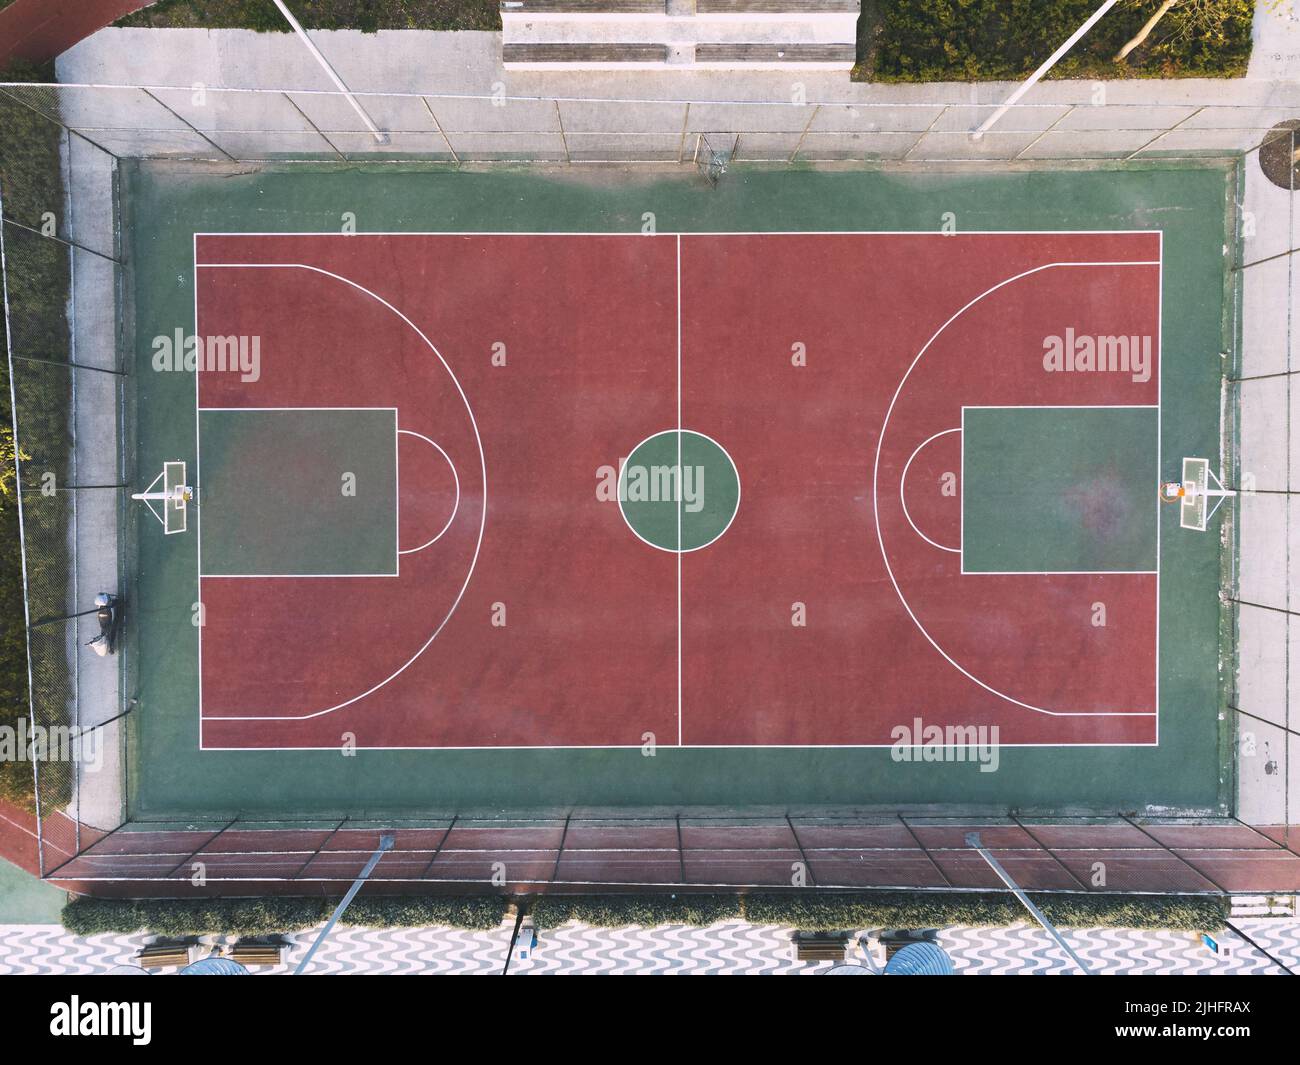 Luftaufnahme von einem Basketballplatz Stockfoto